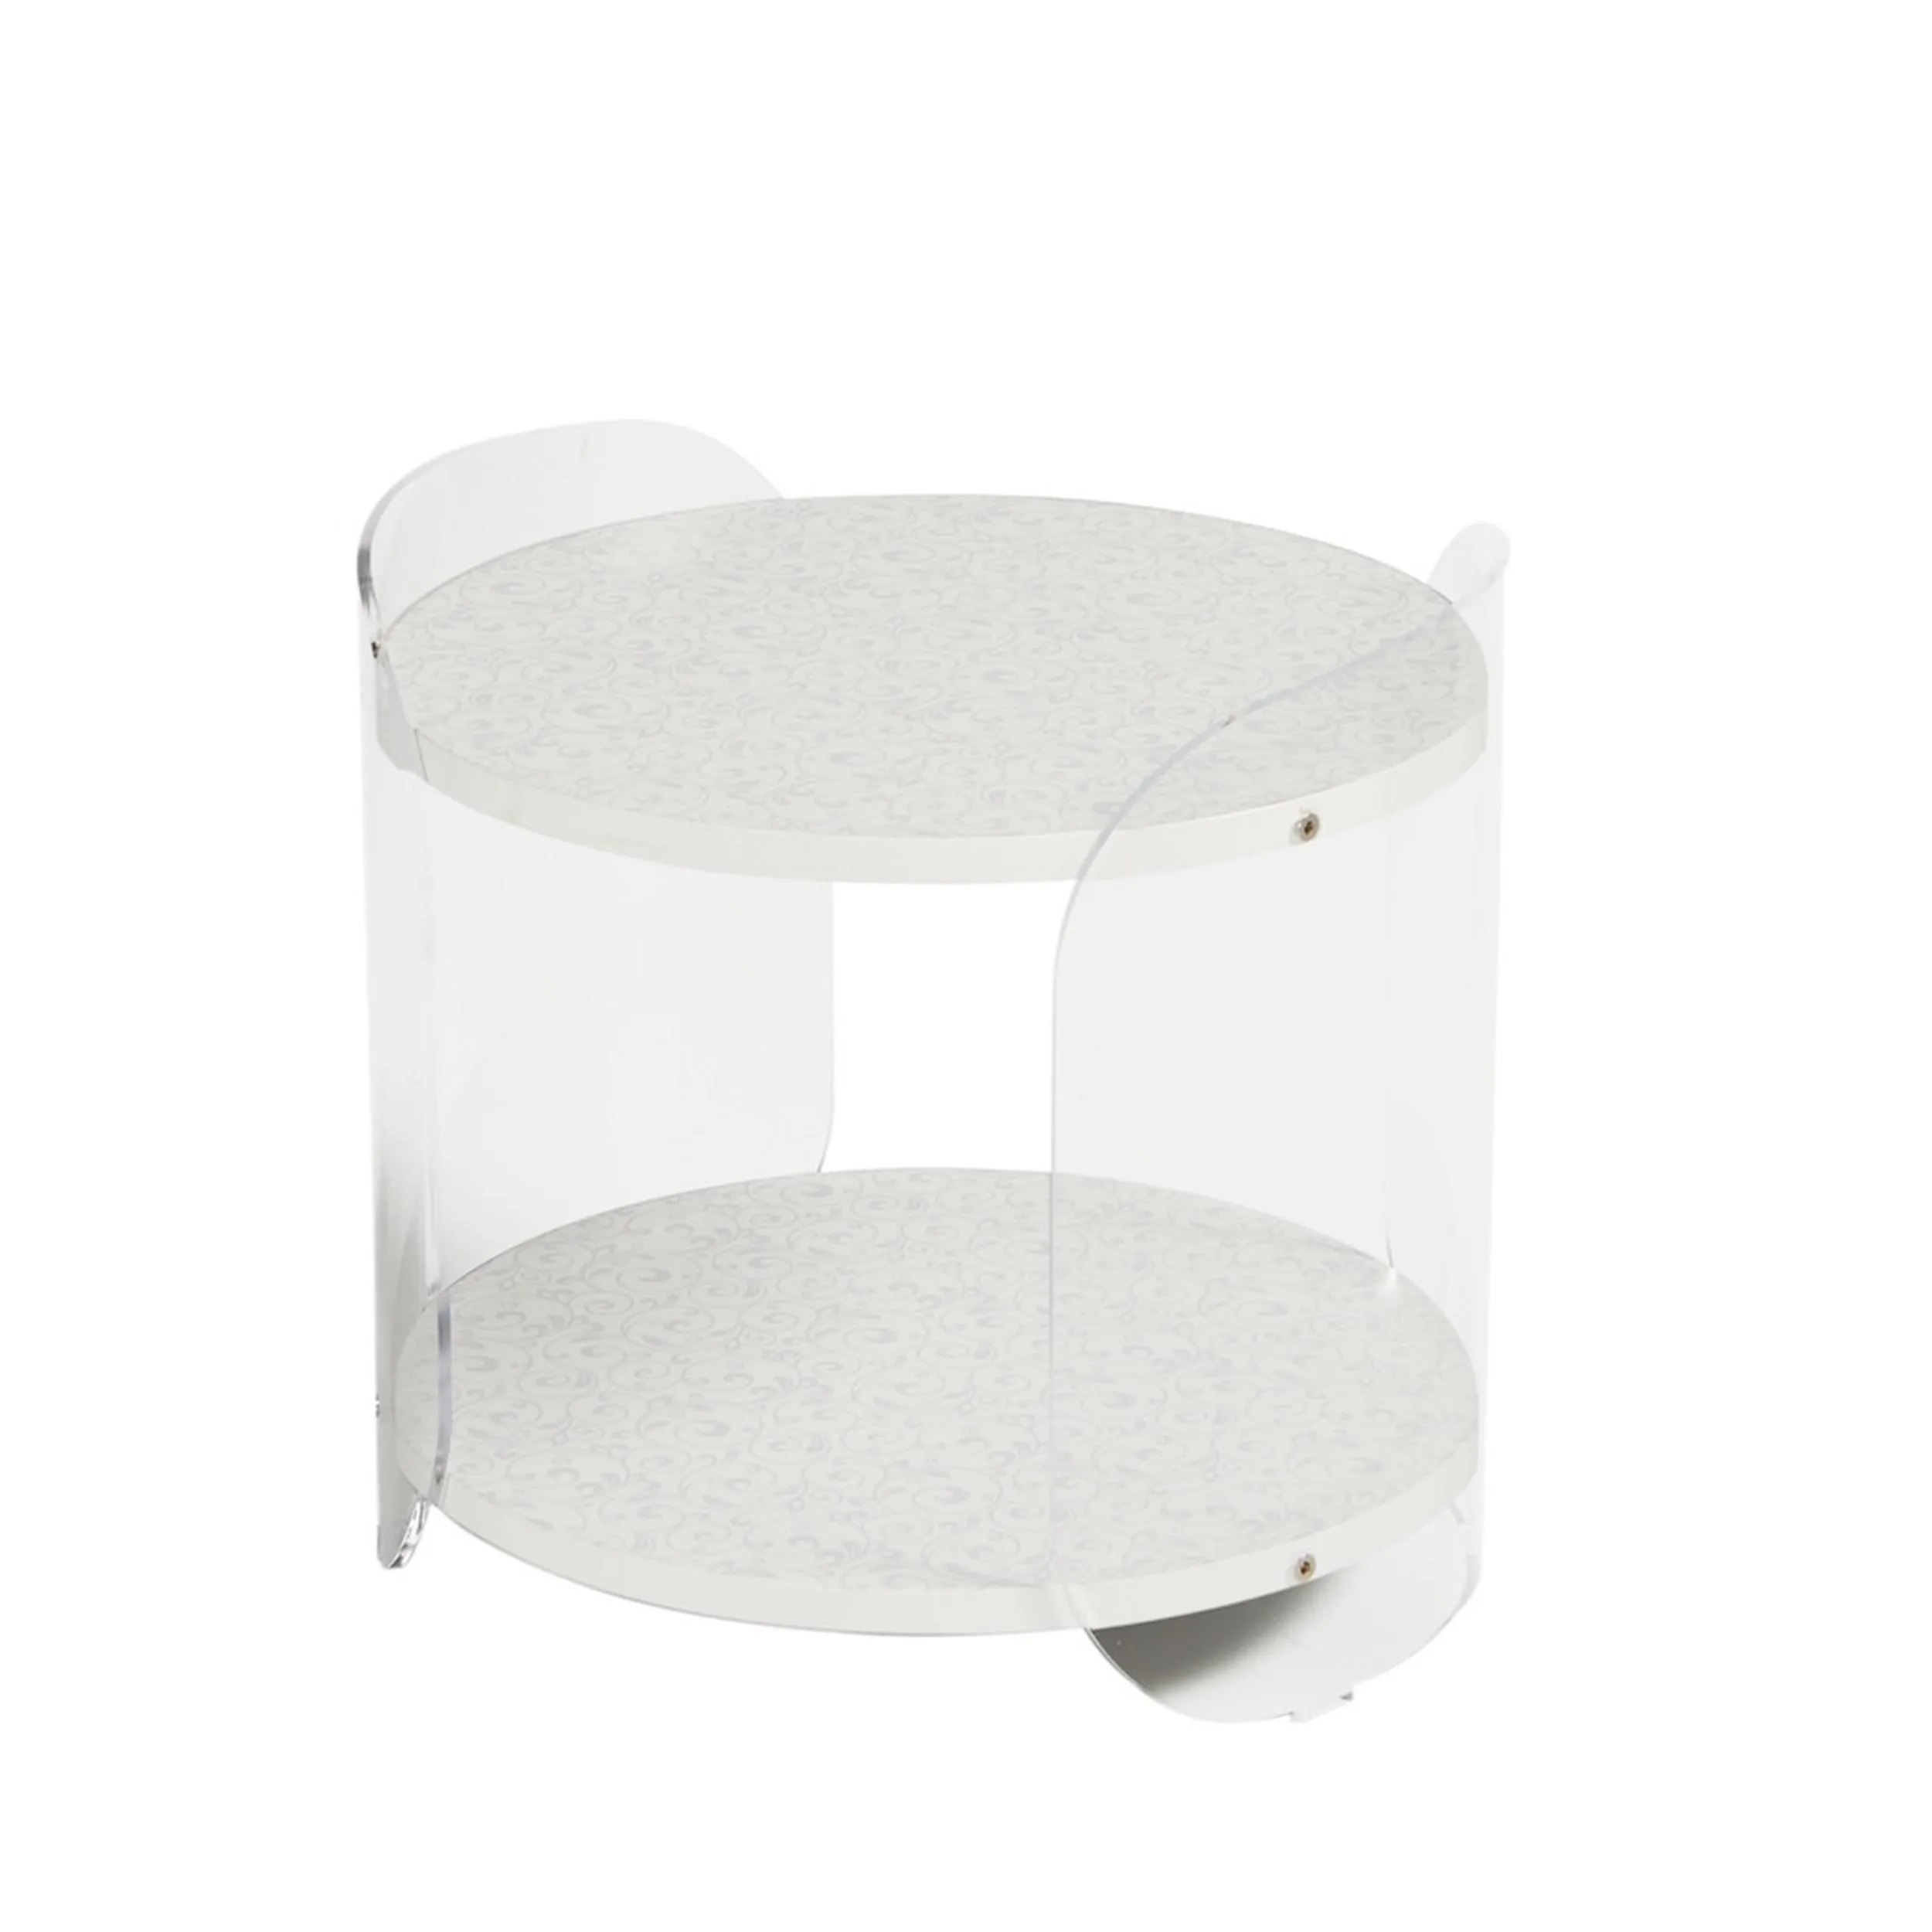 Tavolinetto , comodino in metacrilato Trasparente ALVIN 41x41xh39 cm con ripiano in legno nobilitato particolari in acciaio lucido bianco